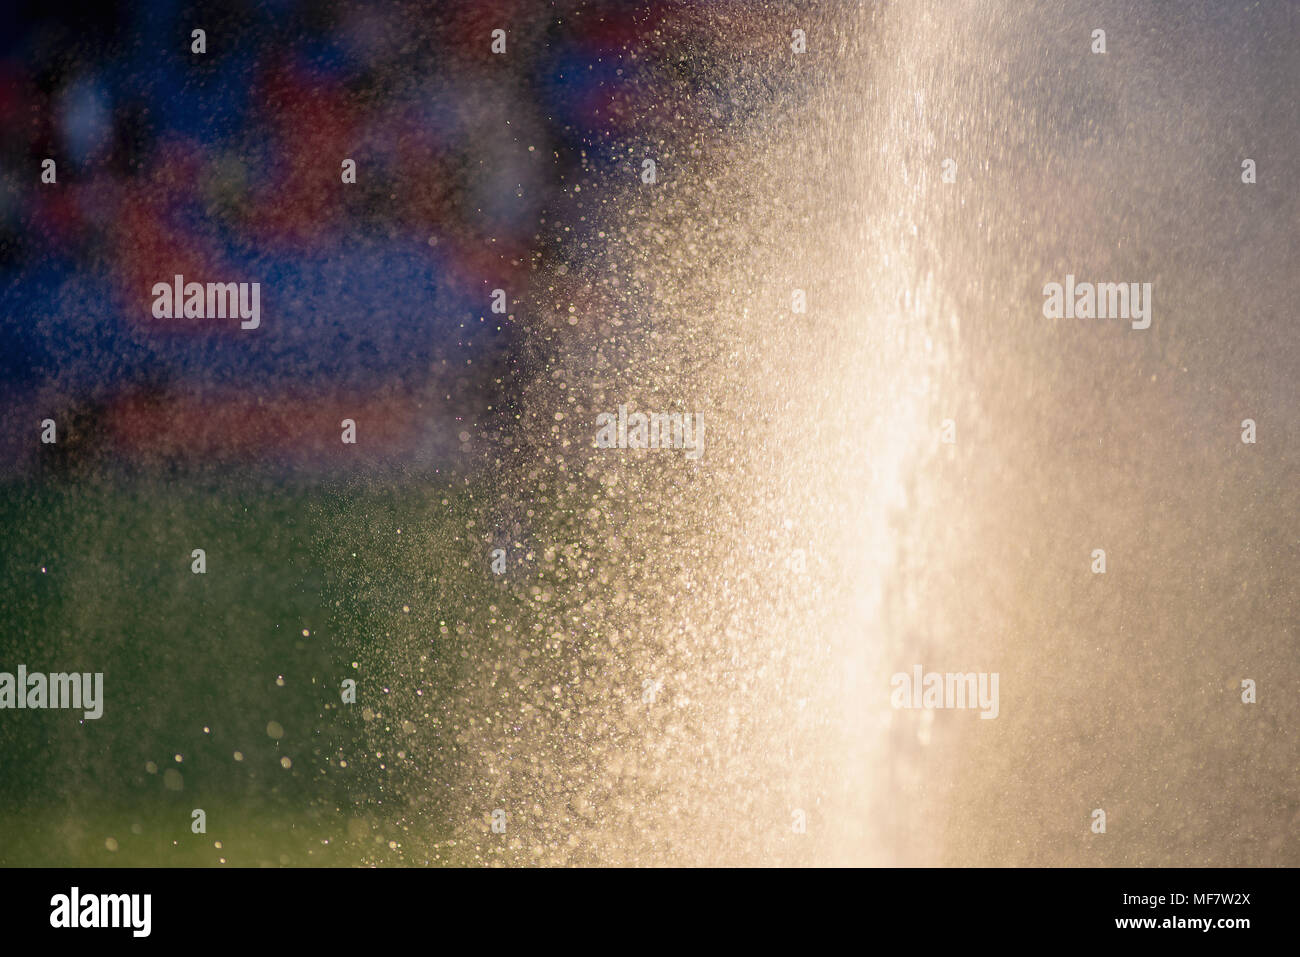 Irrigation turf. Sprinkler watering football field. Stock Photo